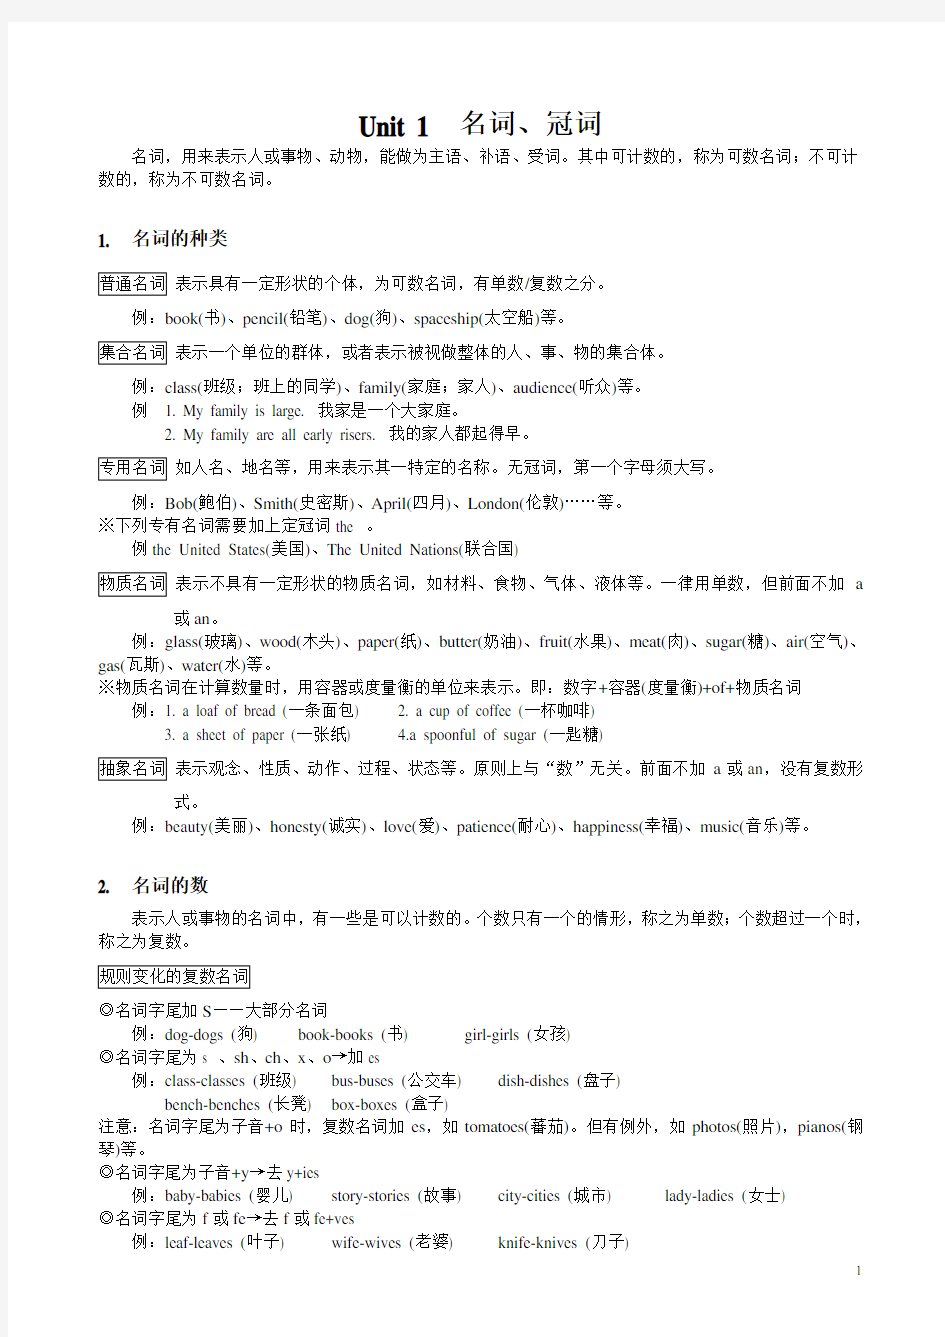 谢孟媛初级英文文法讲义1~3(新整理)